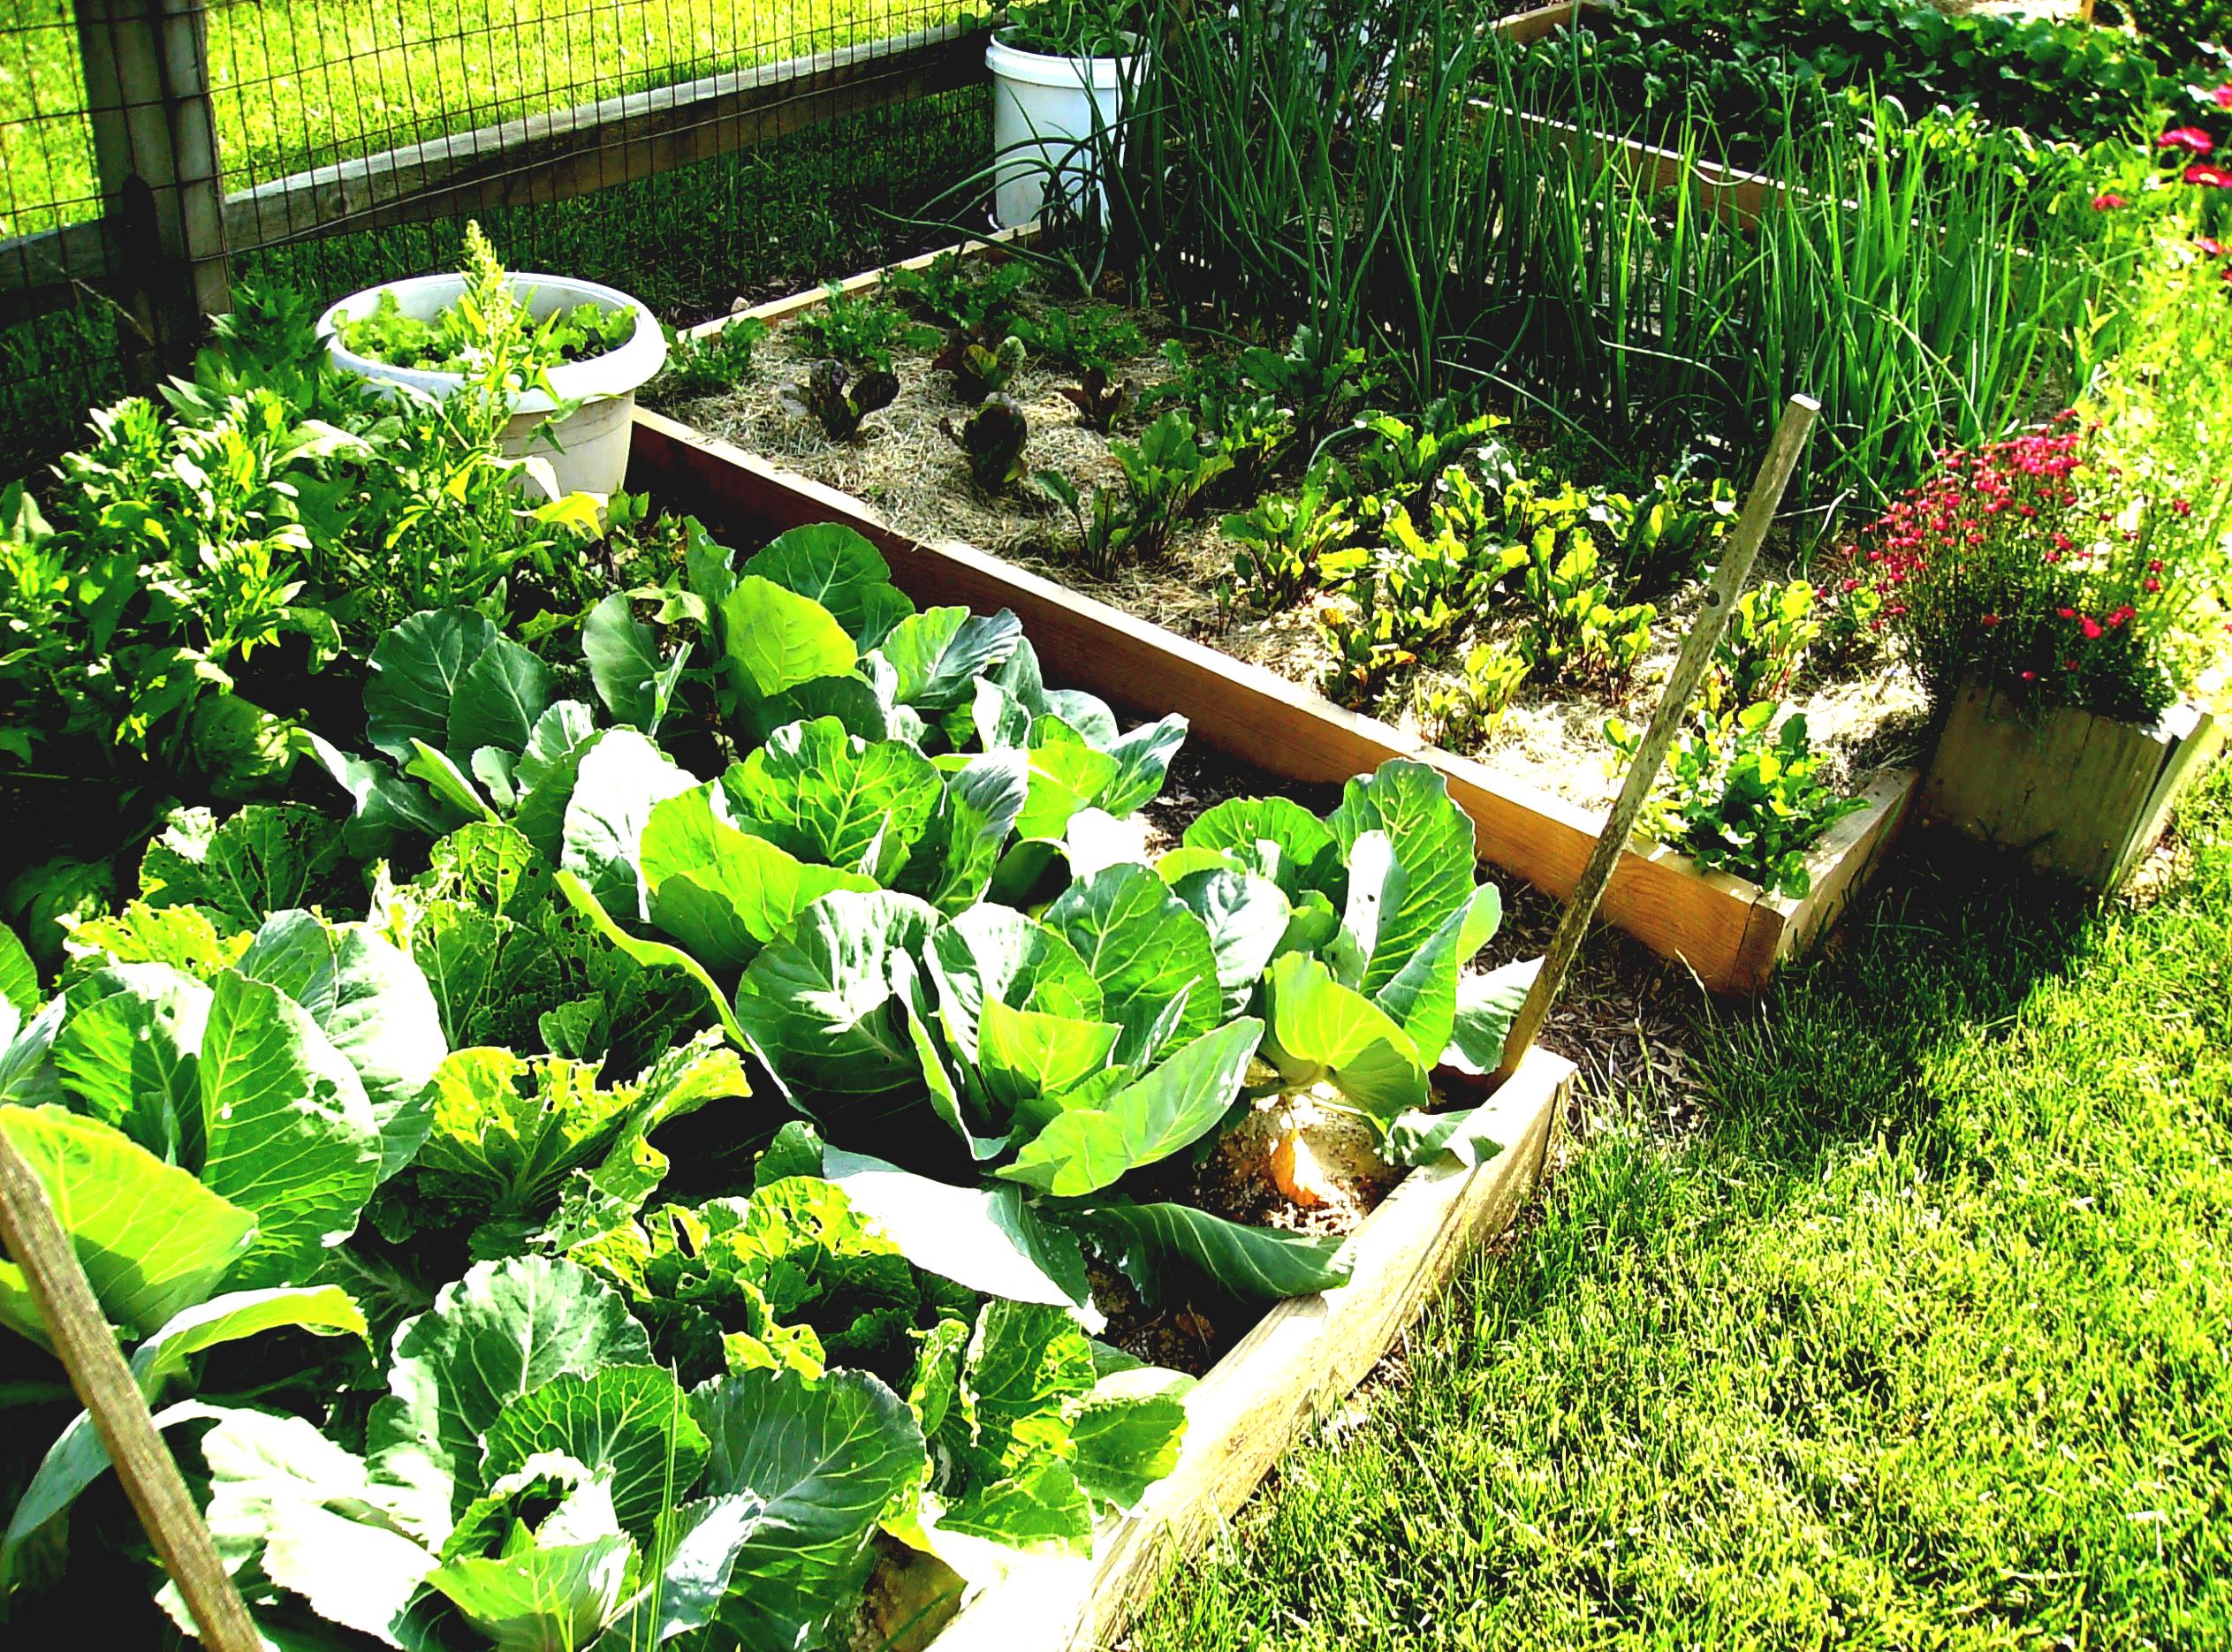 creating an urban vegetable garden photo - 4